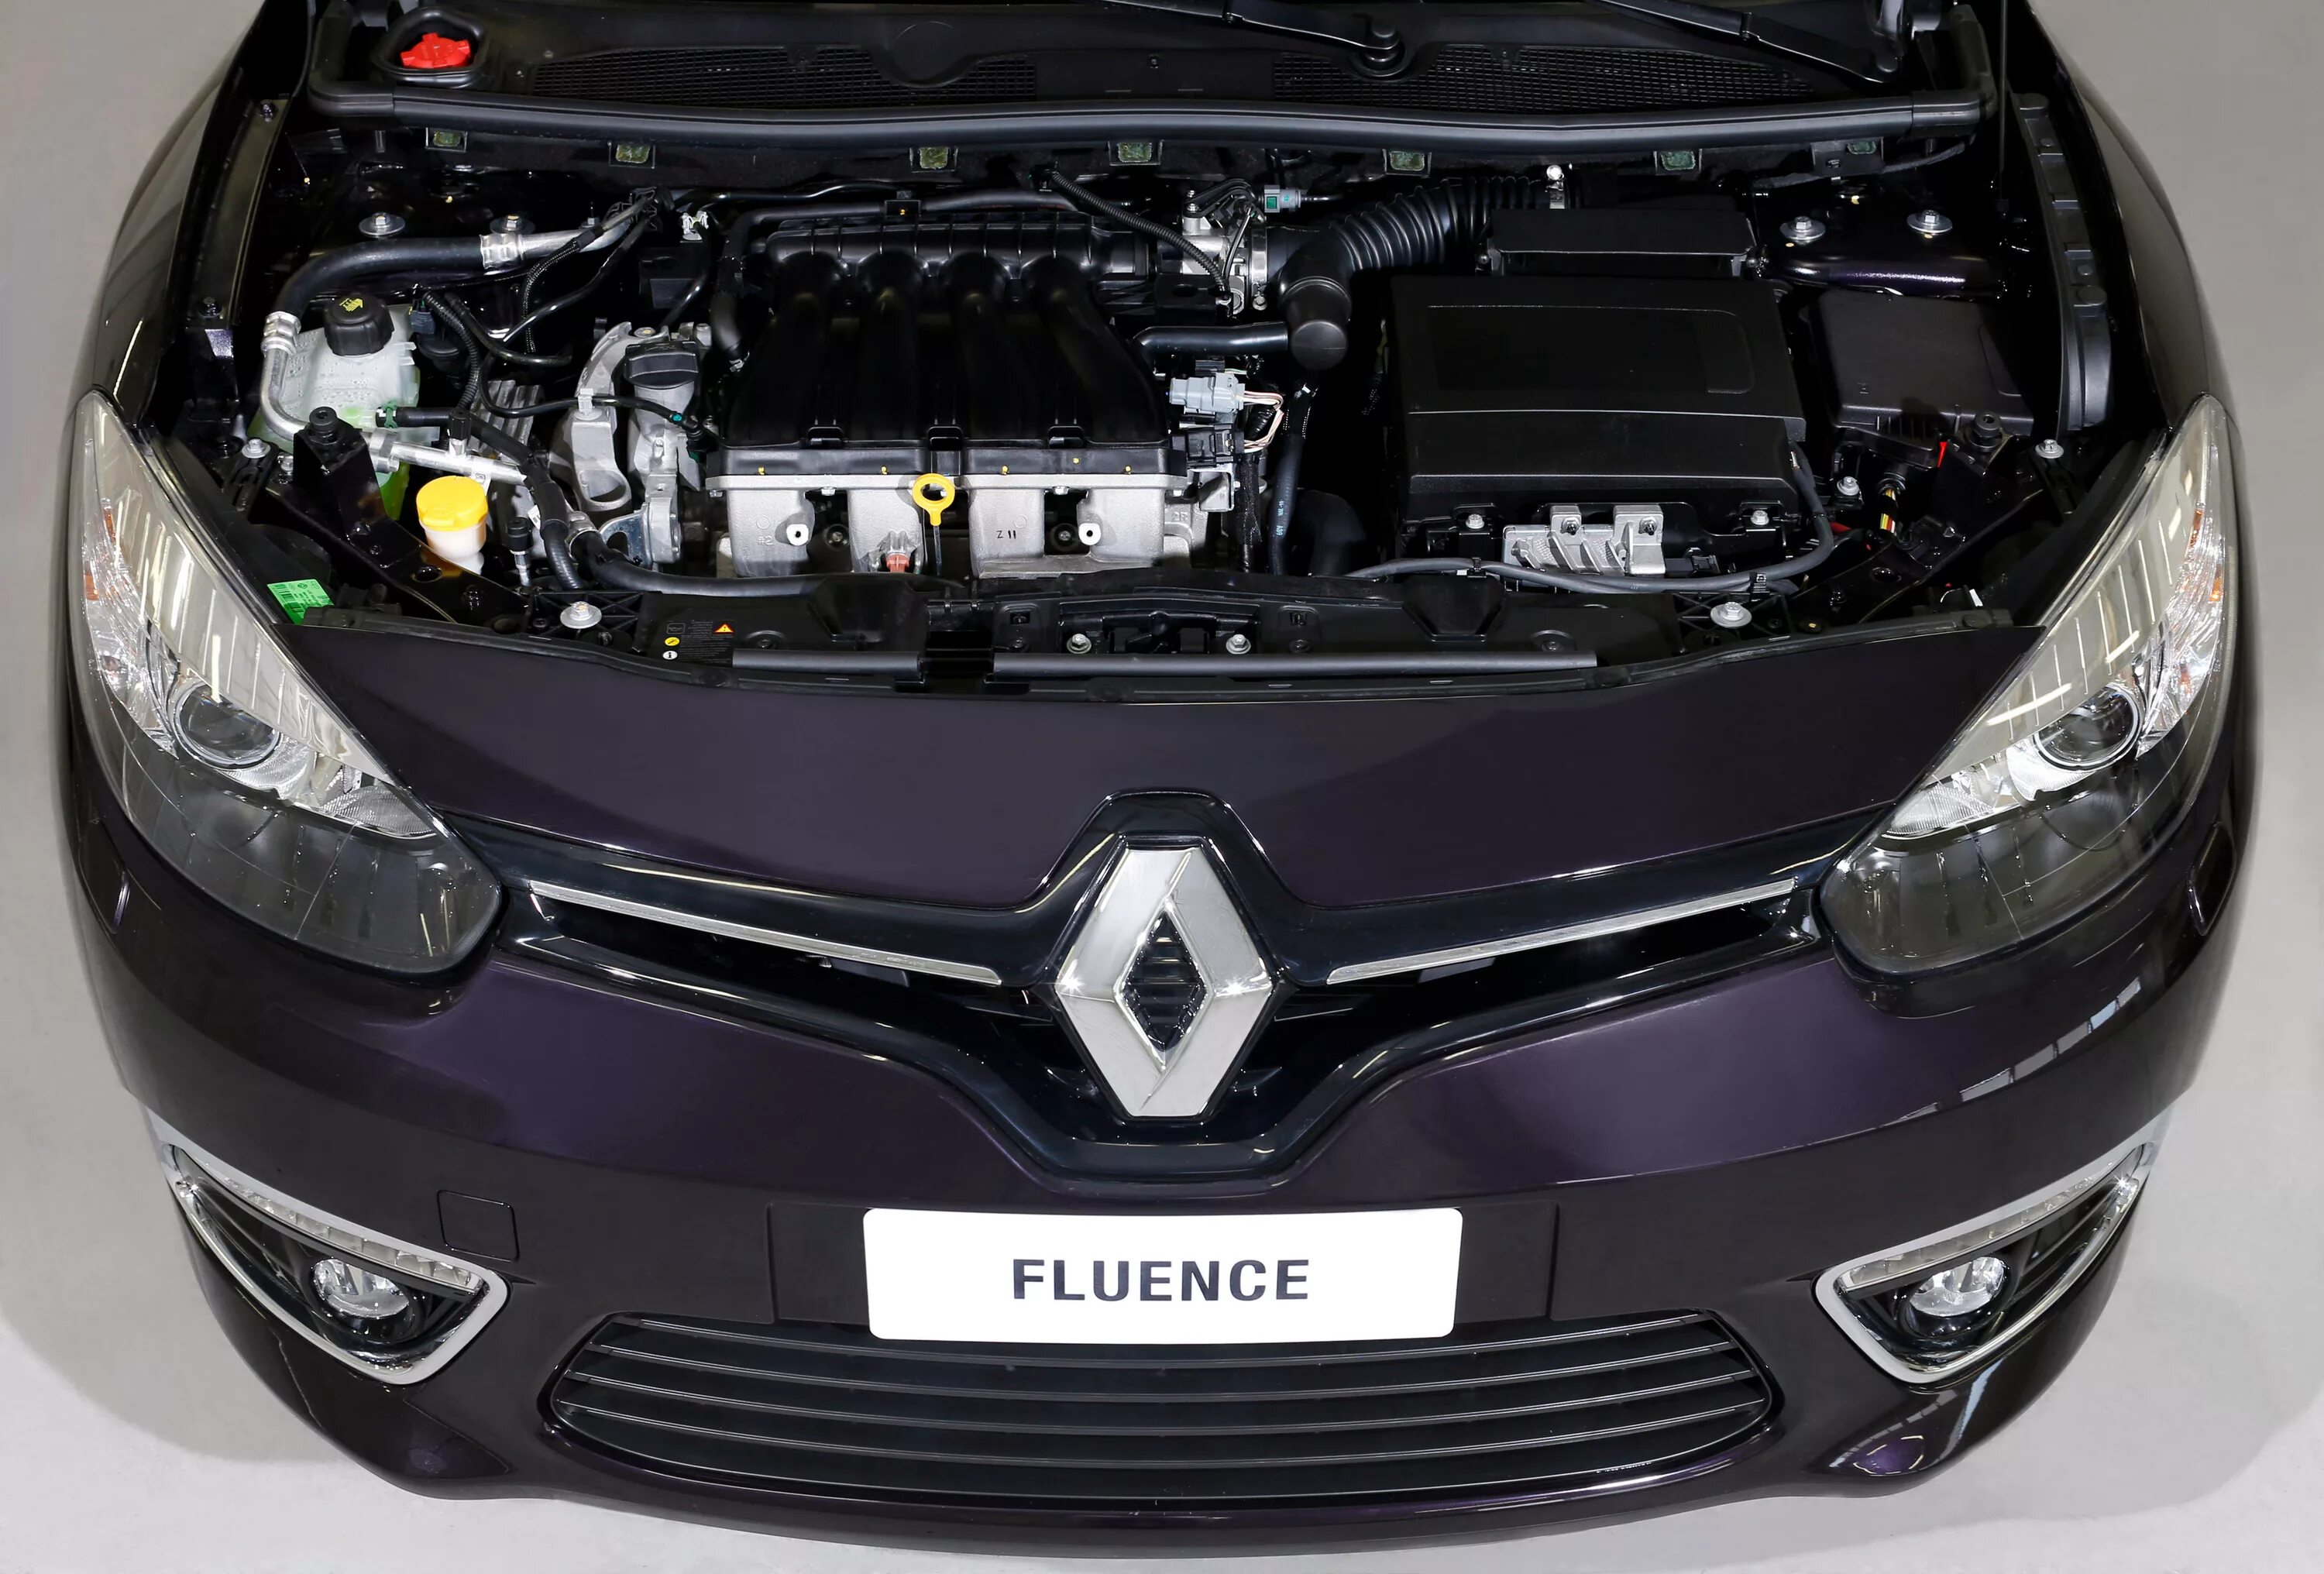 Renault fluence двигатели. Подкапотное пространство Рено Флюенс. Рено Флюенс 2013 под капотом. Рено Флюенс АКБ. Renault Fluence 2010 под капотом.